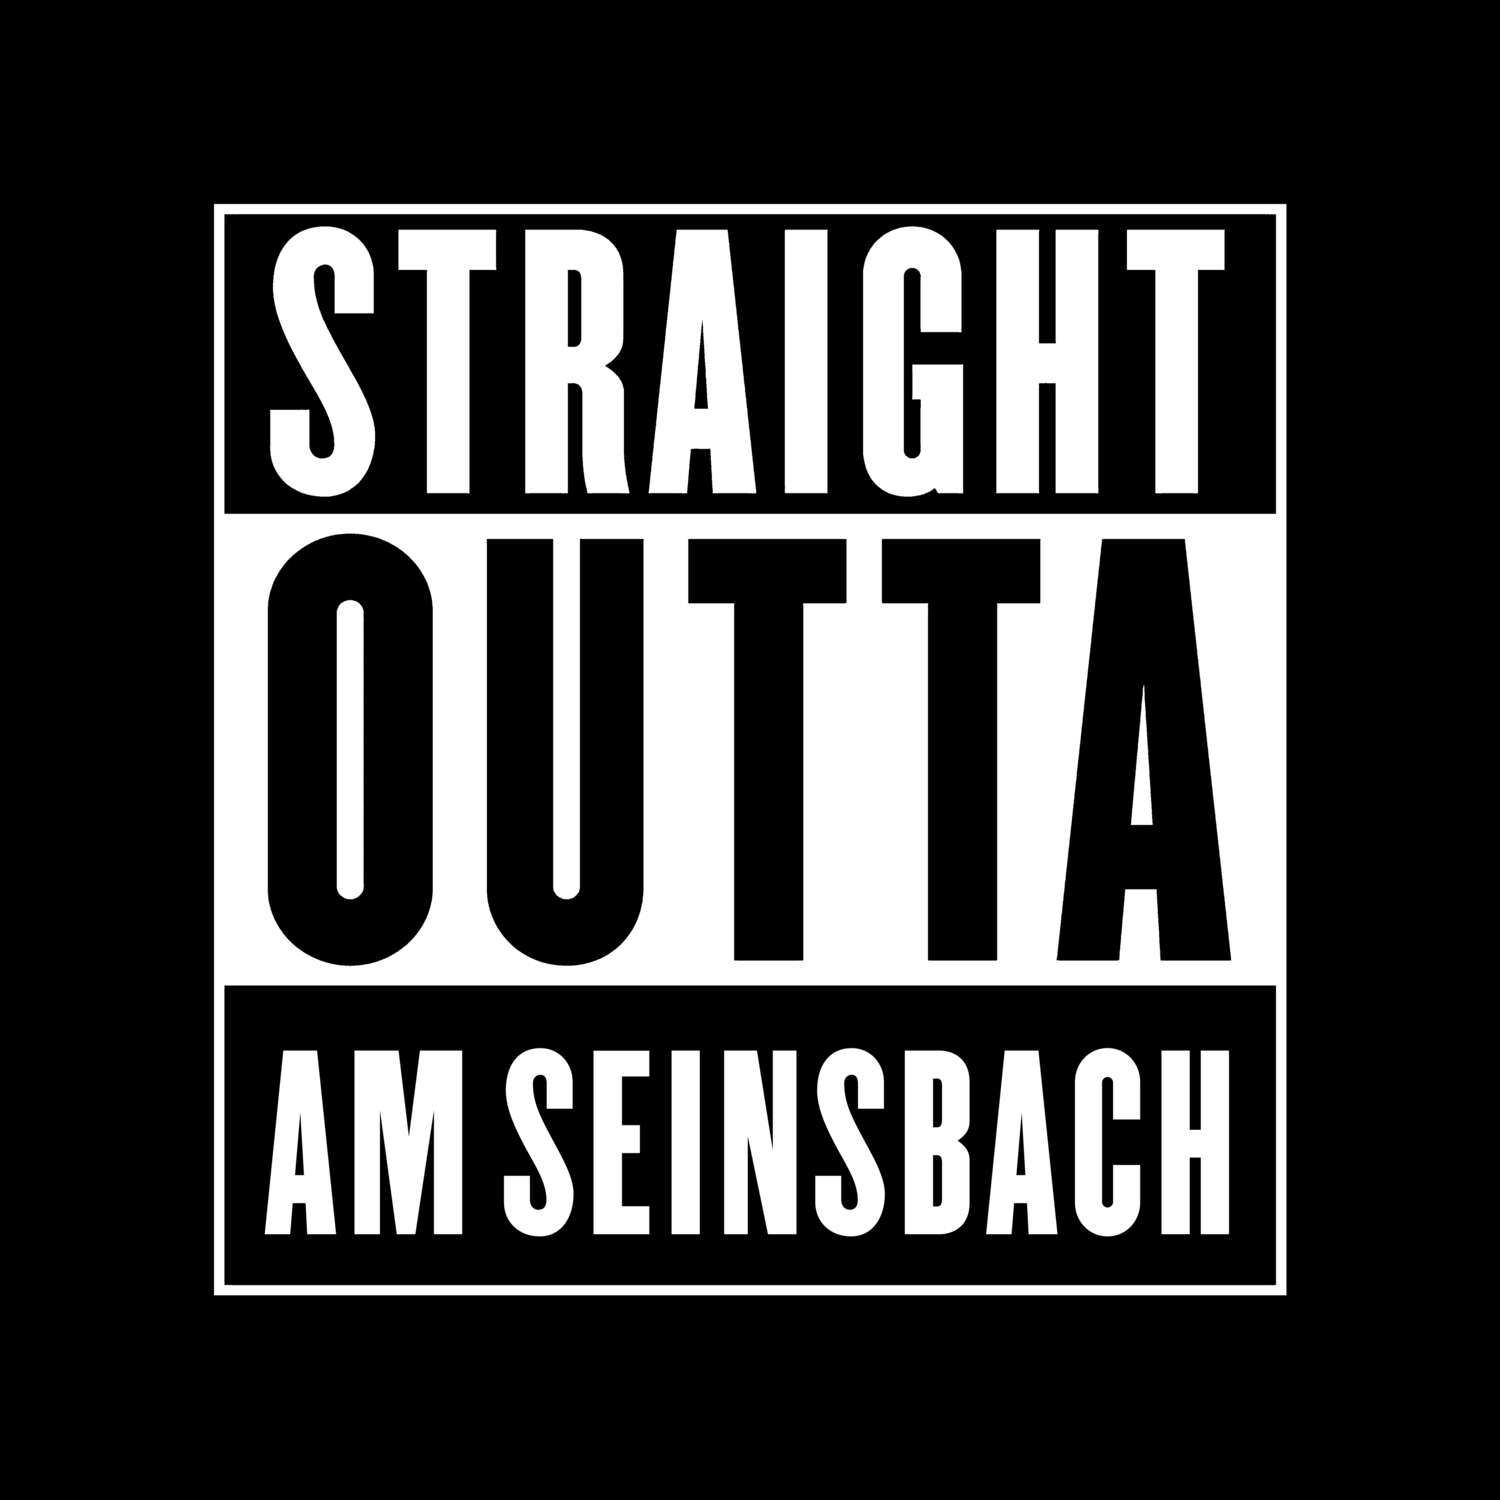 Am Seinsbach T-Shirt »Straight Outta«